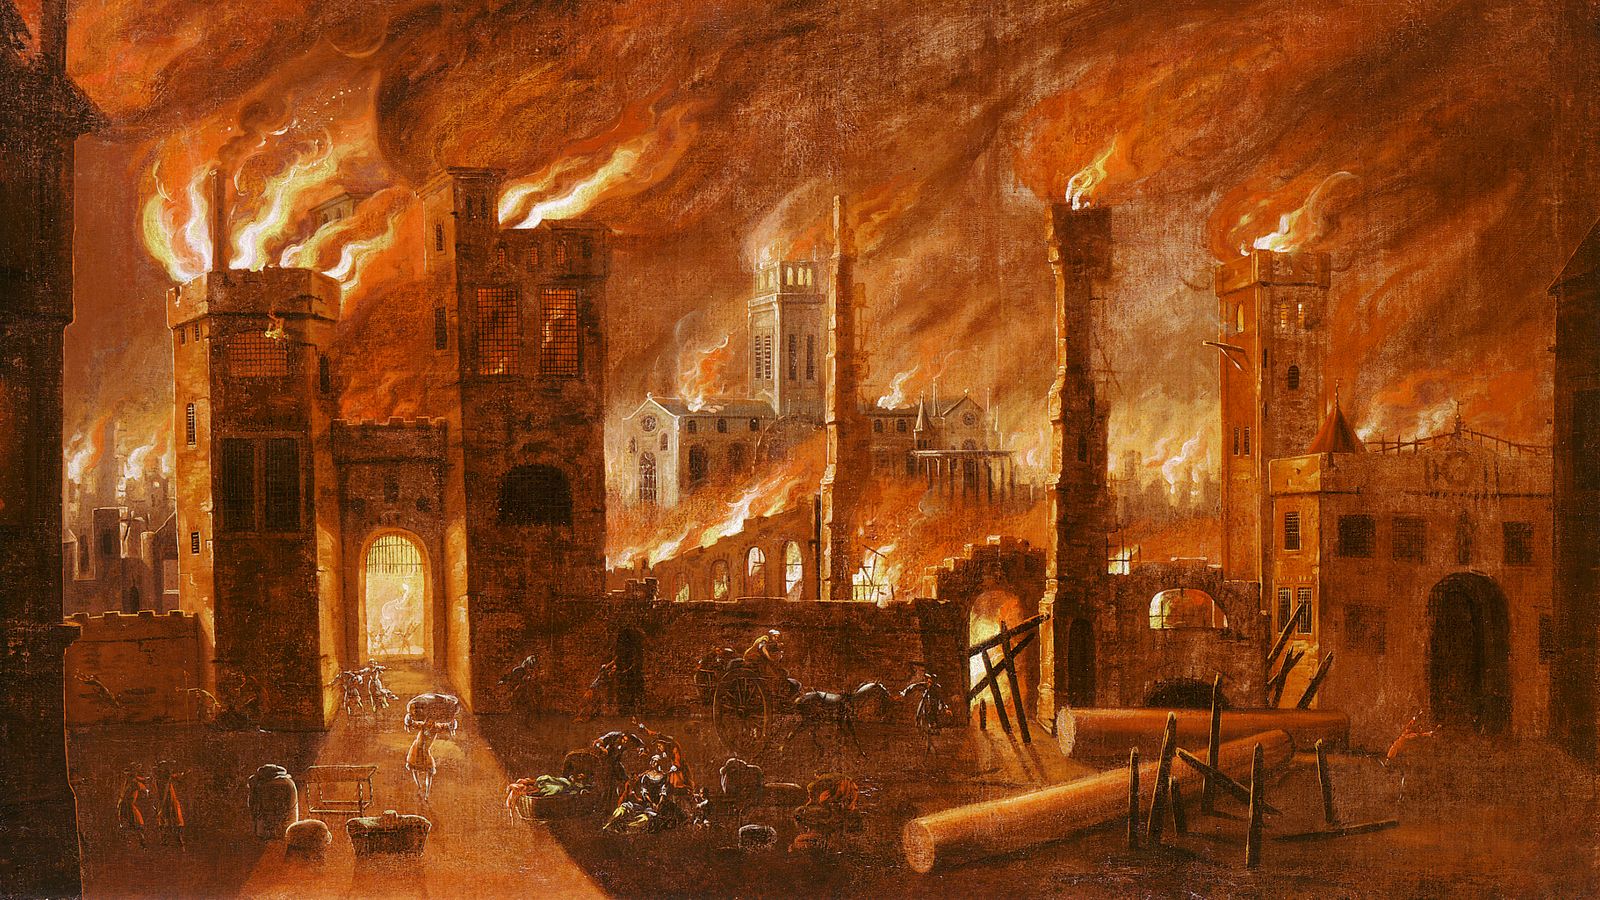 لوحة تاريخية تمثل حريق لندن الكبير 